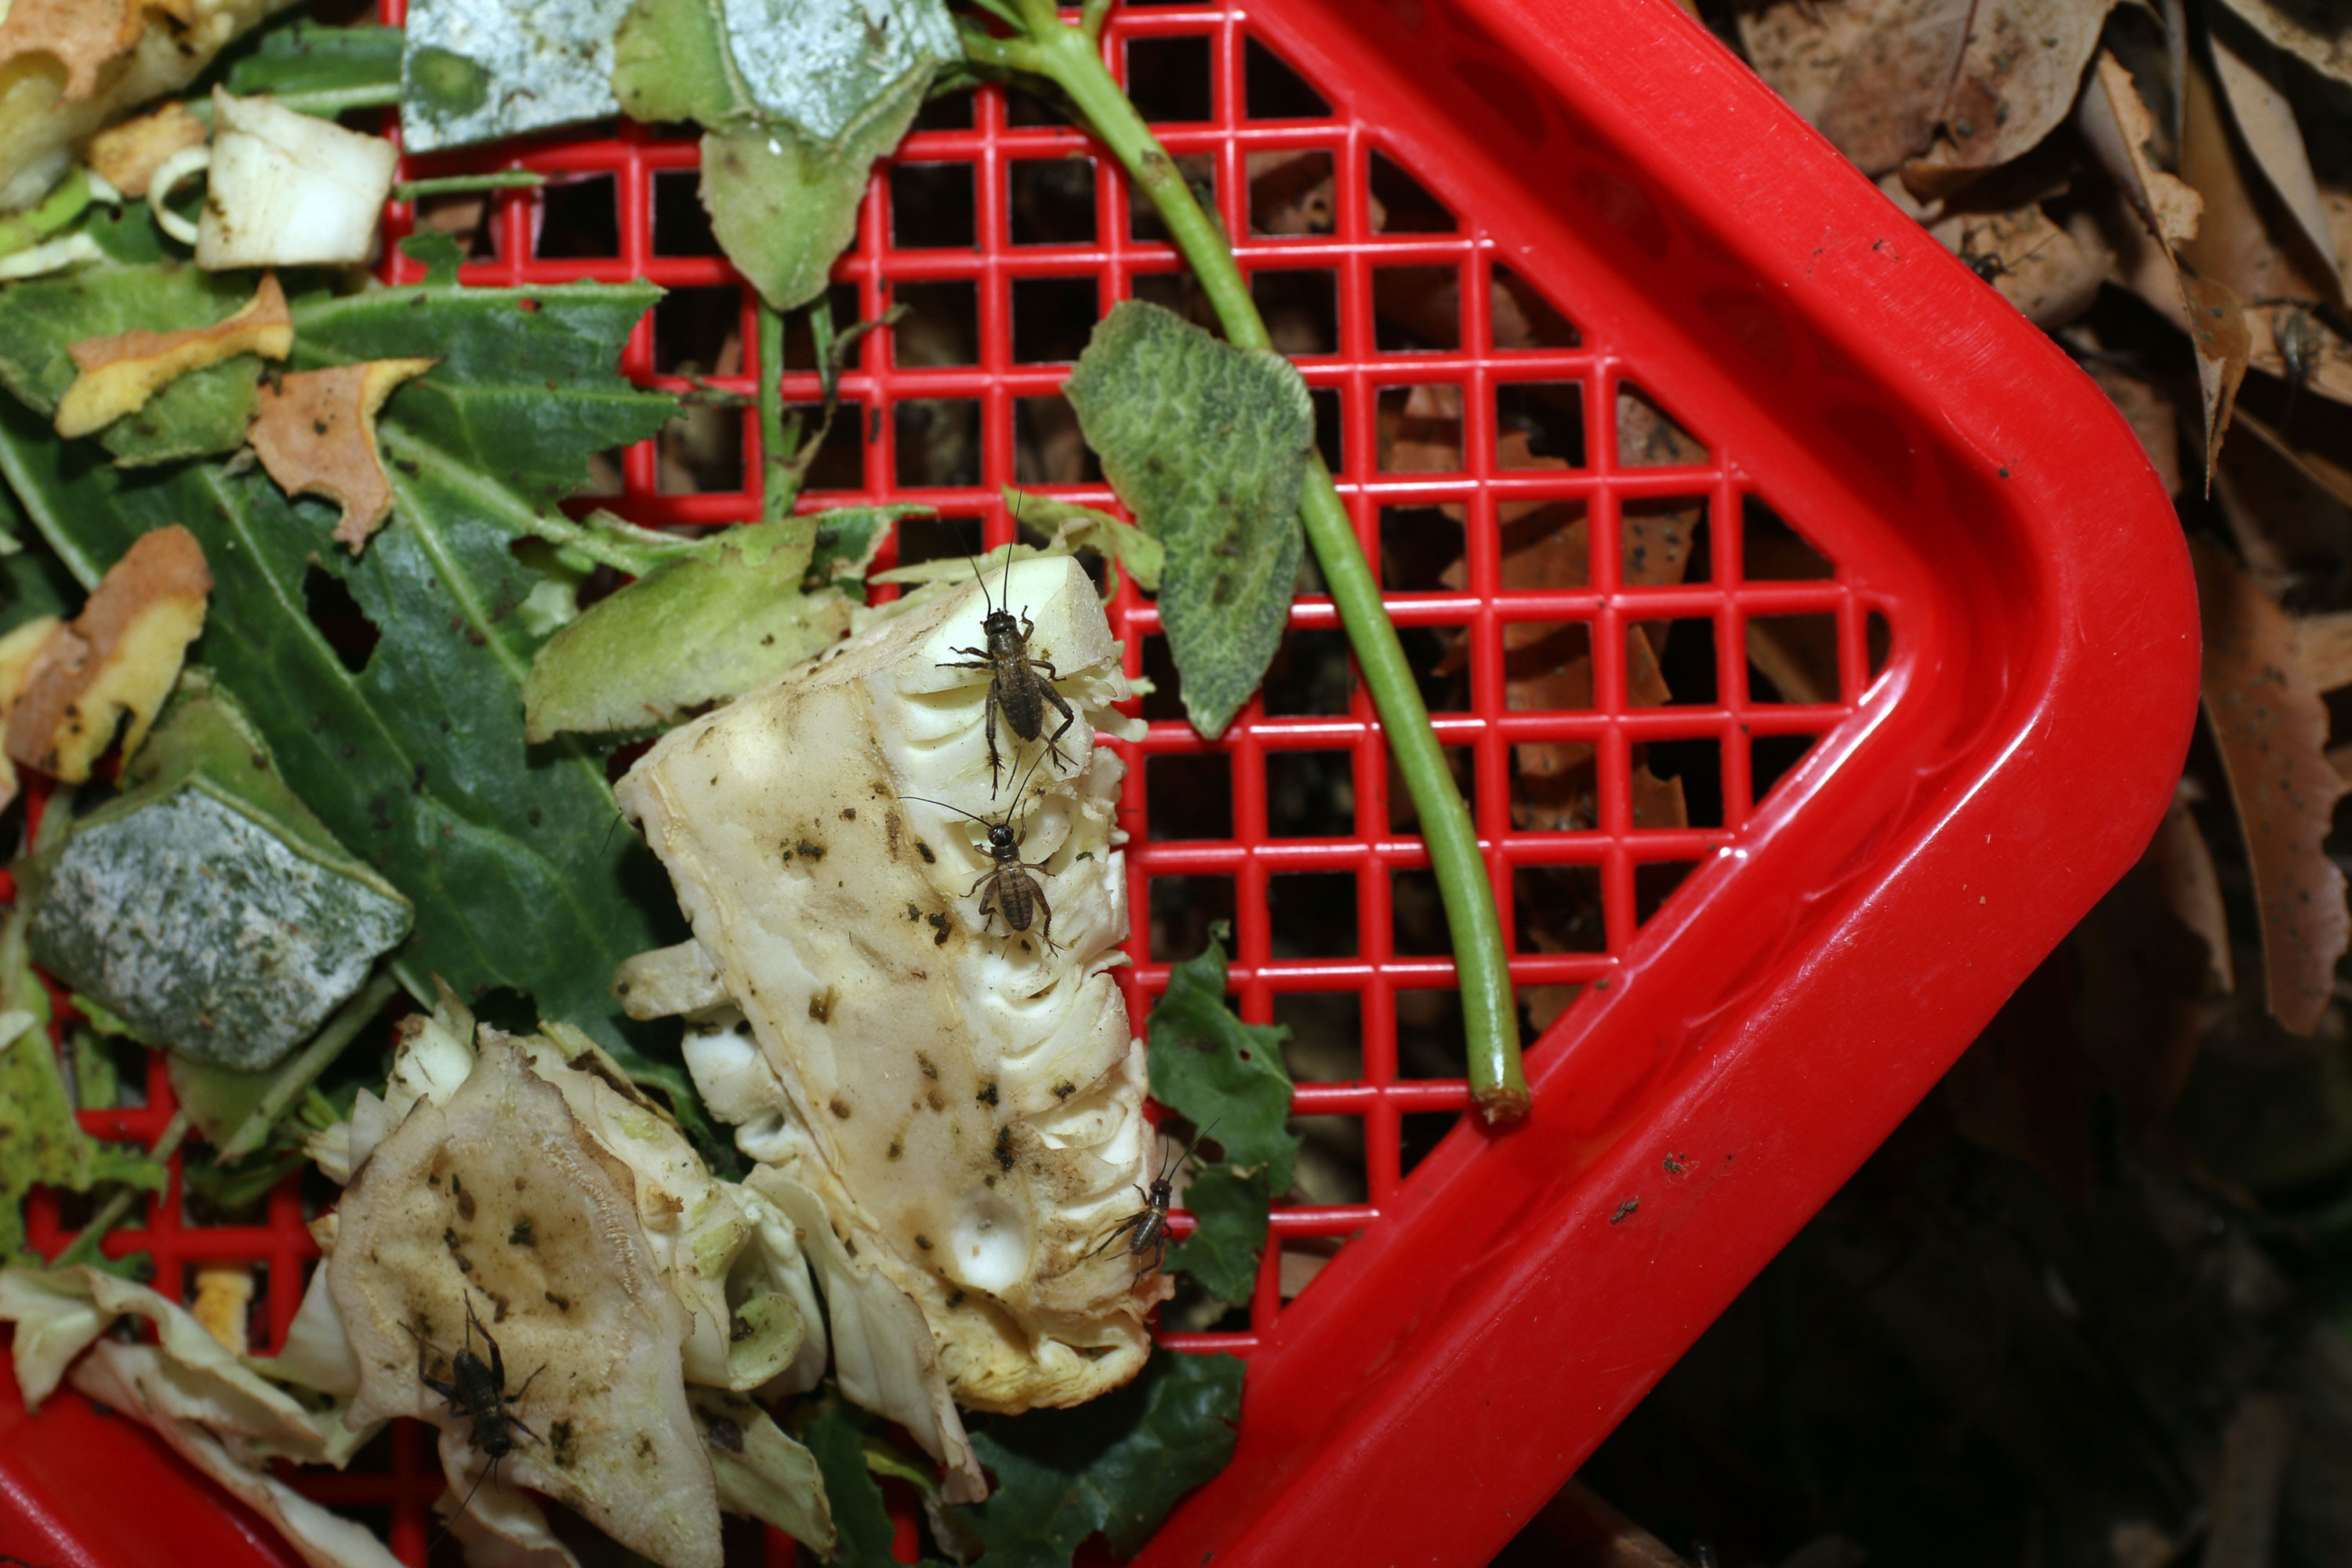 Thức ăn của dế là các loại rau củ được trồng trong vườn nhà. Ảnh: Đình Tuân